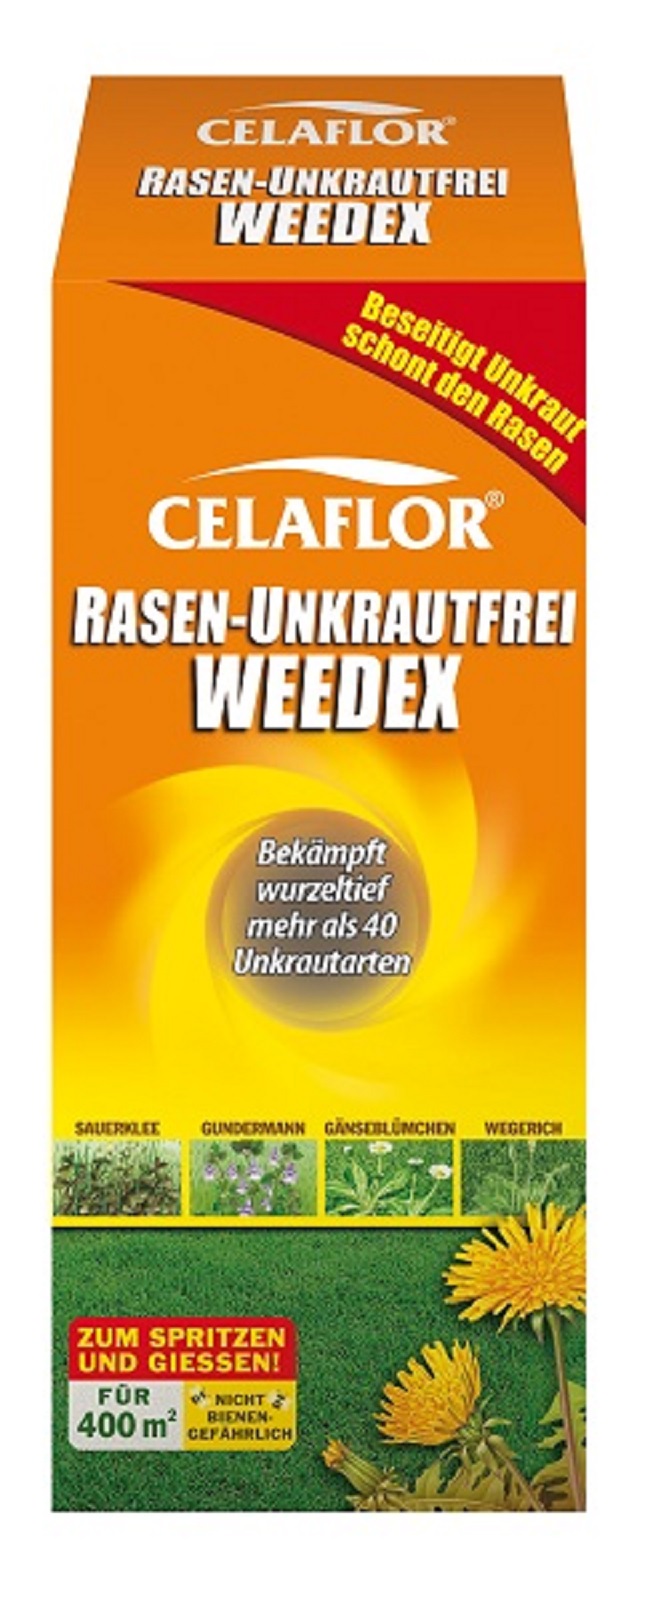 Celaflor Rasen Unkrautfrei Weedex  2 x 400 ml